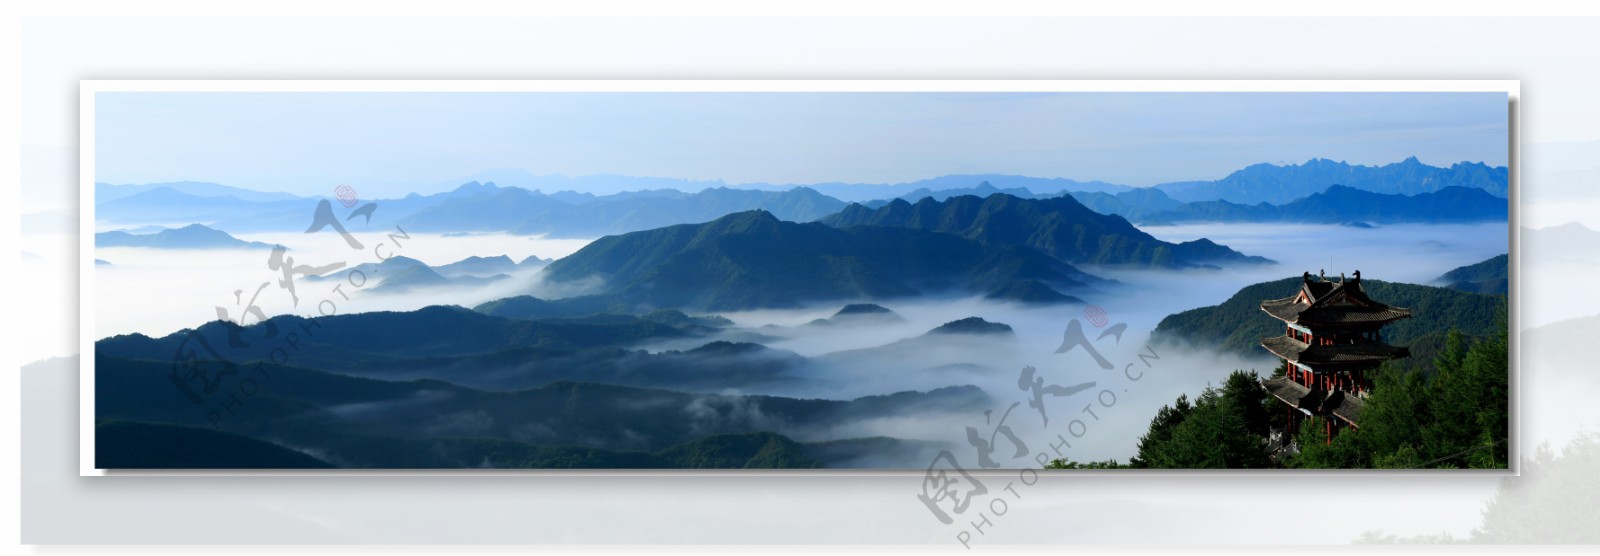 云雾山峰景观图片